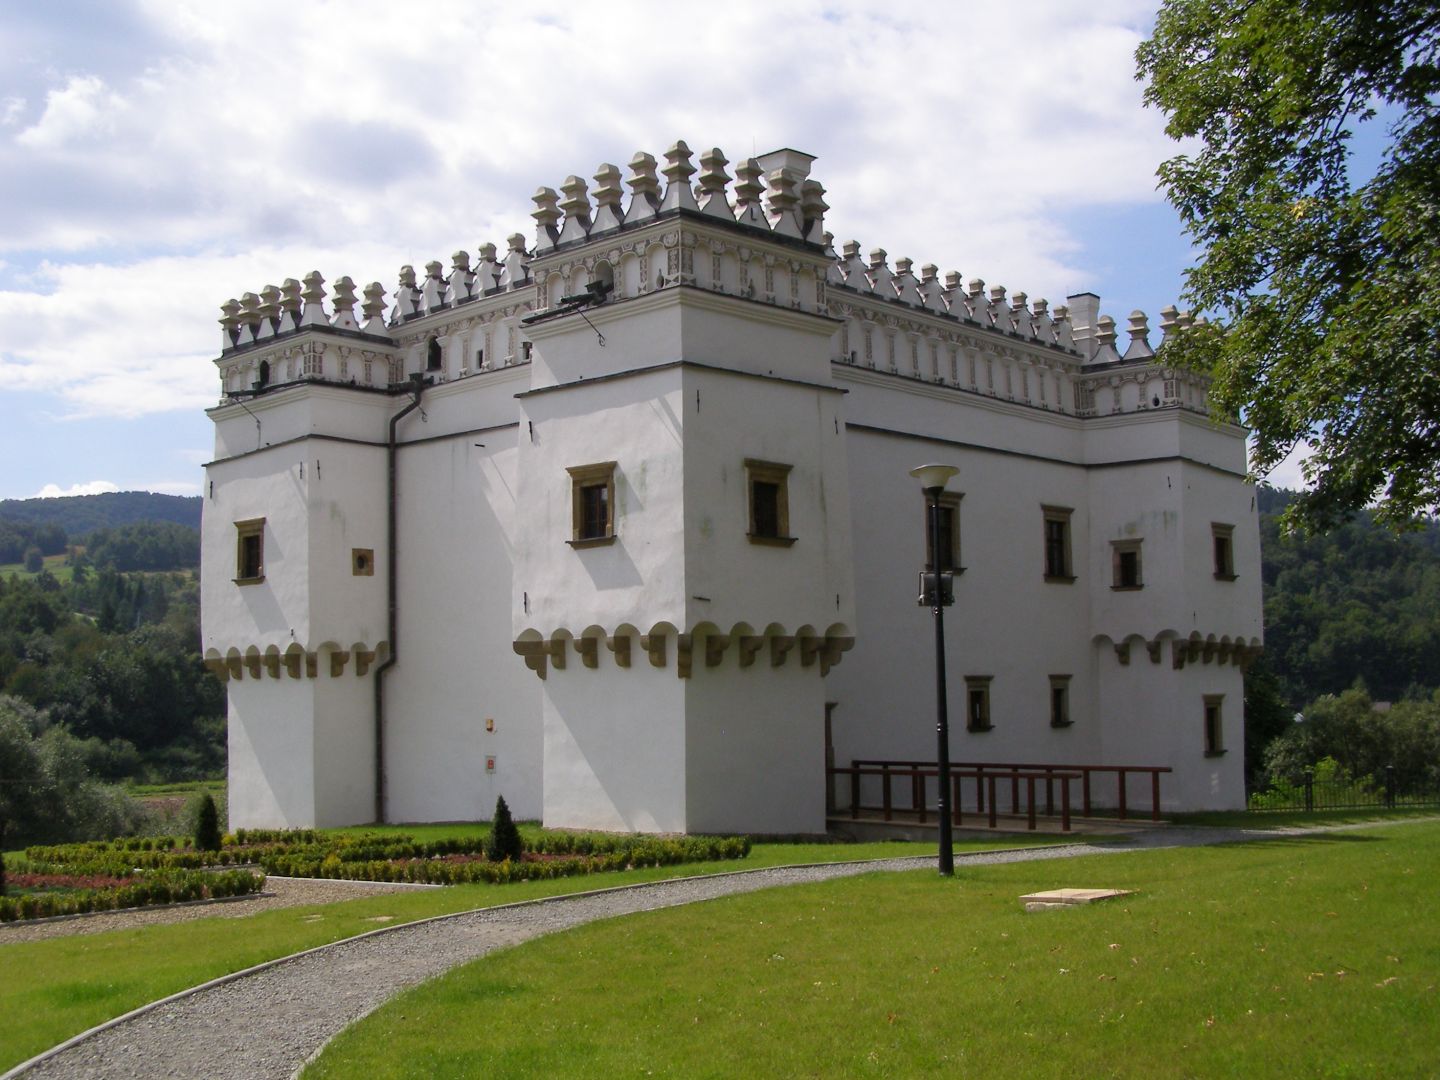 Gładyszów fortified manor house